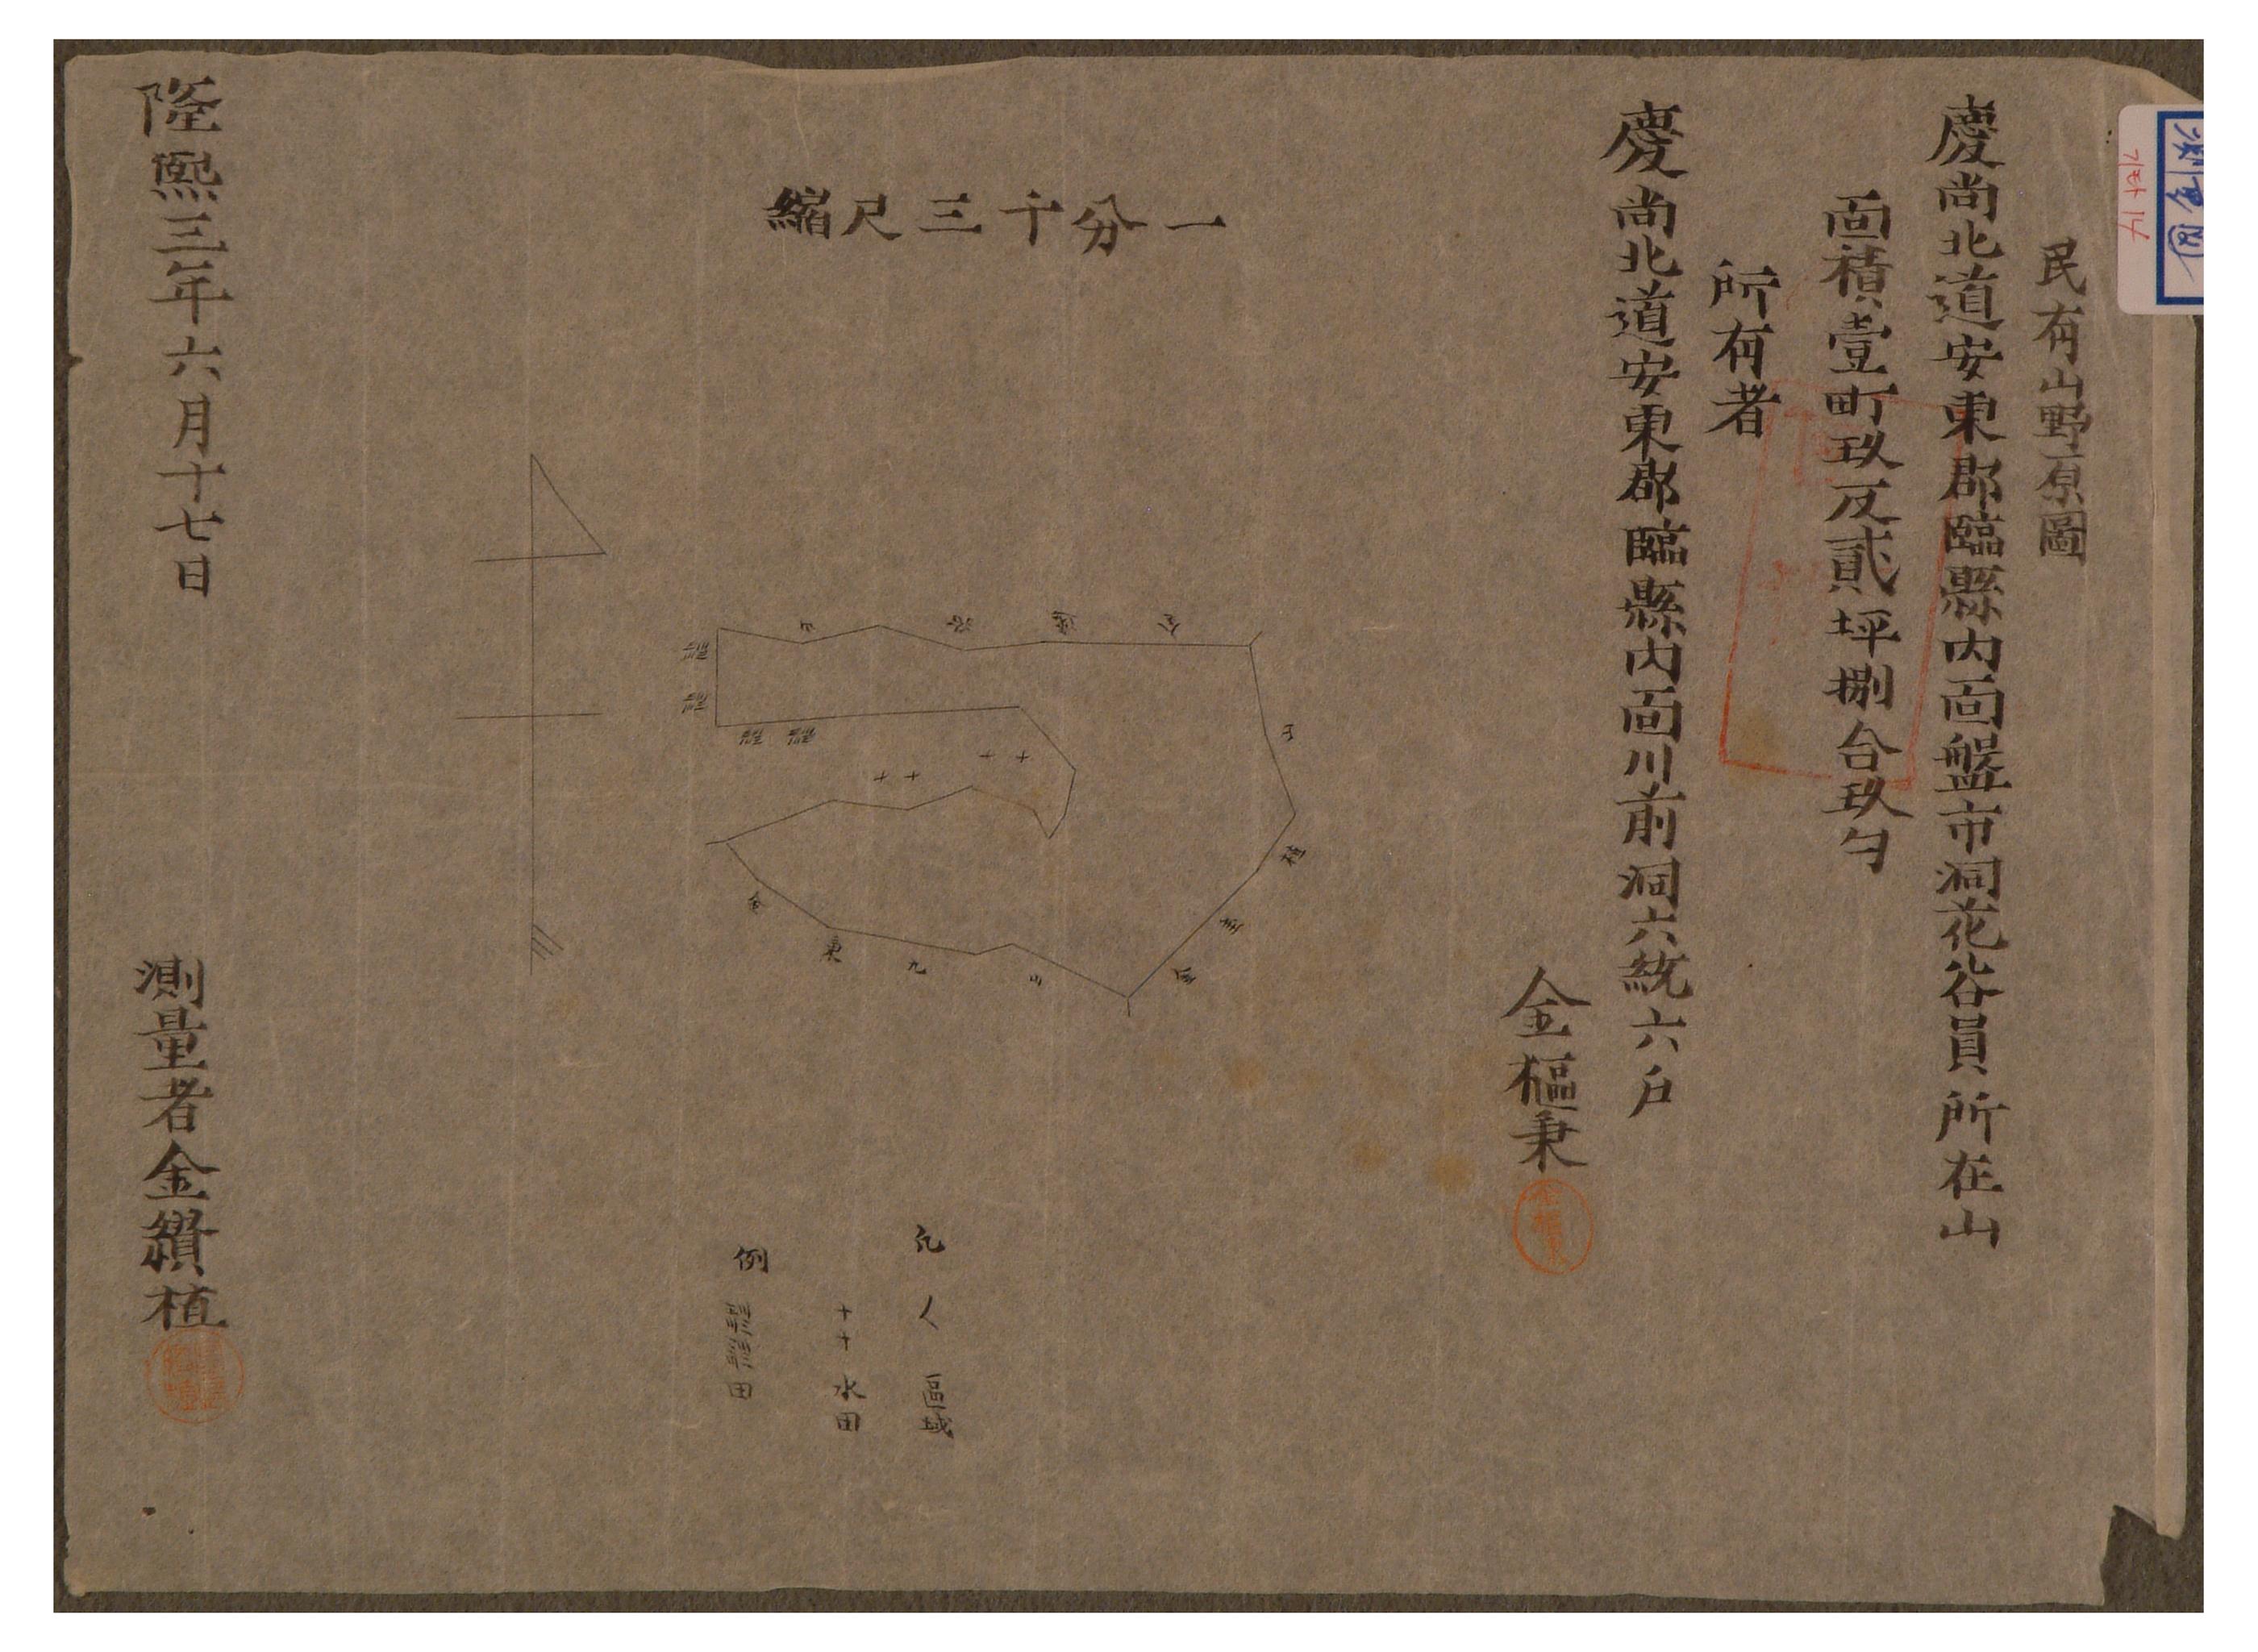 1909년에 김찬식이 김추병 소유의 산야를 측량한 측량도